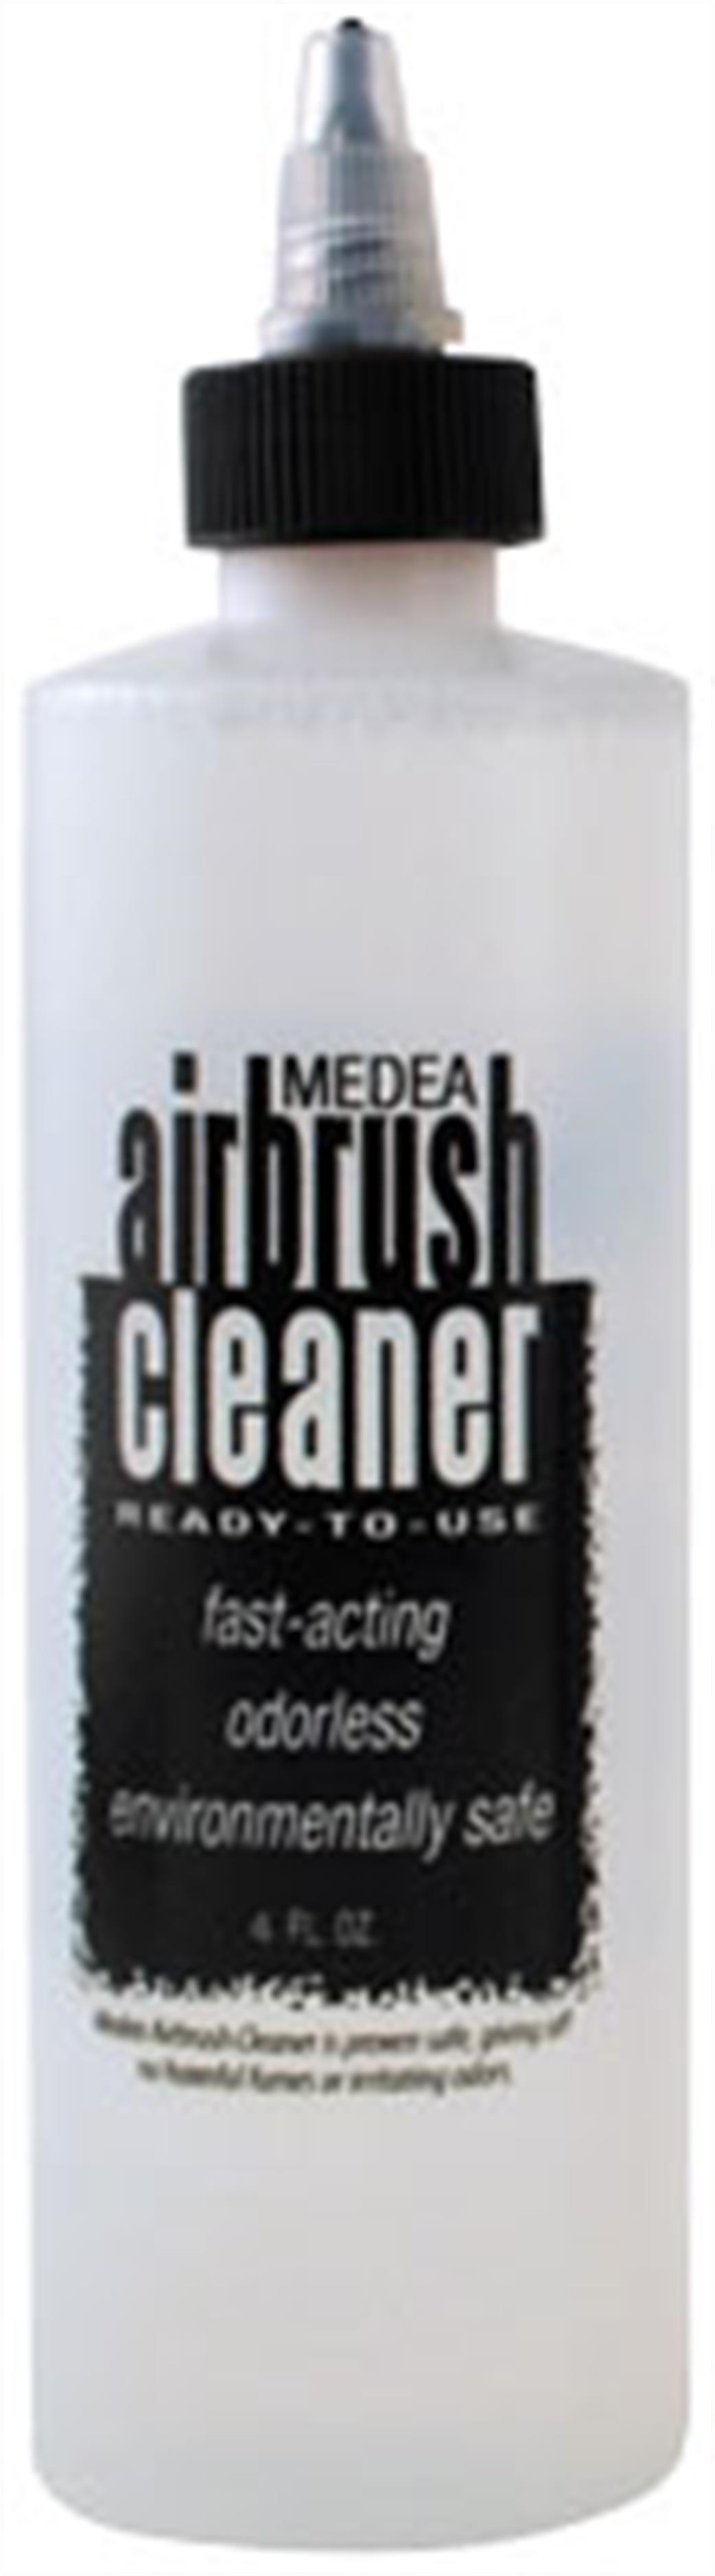 Medea  6 500 04 Acyrlic Airbrush Cleaner 4oz 118ml